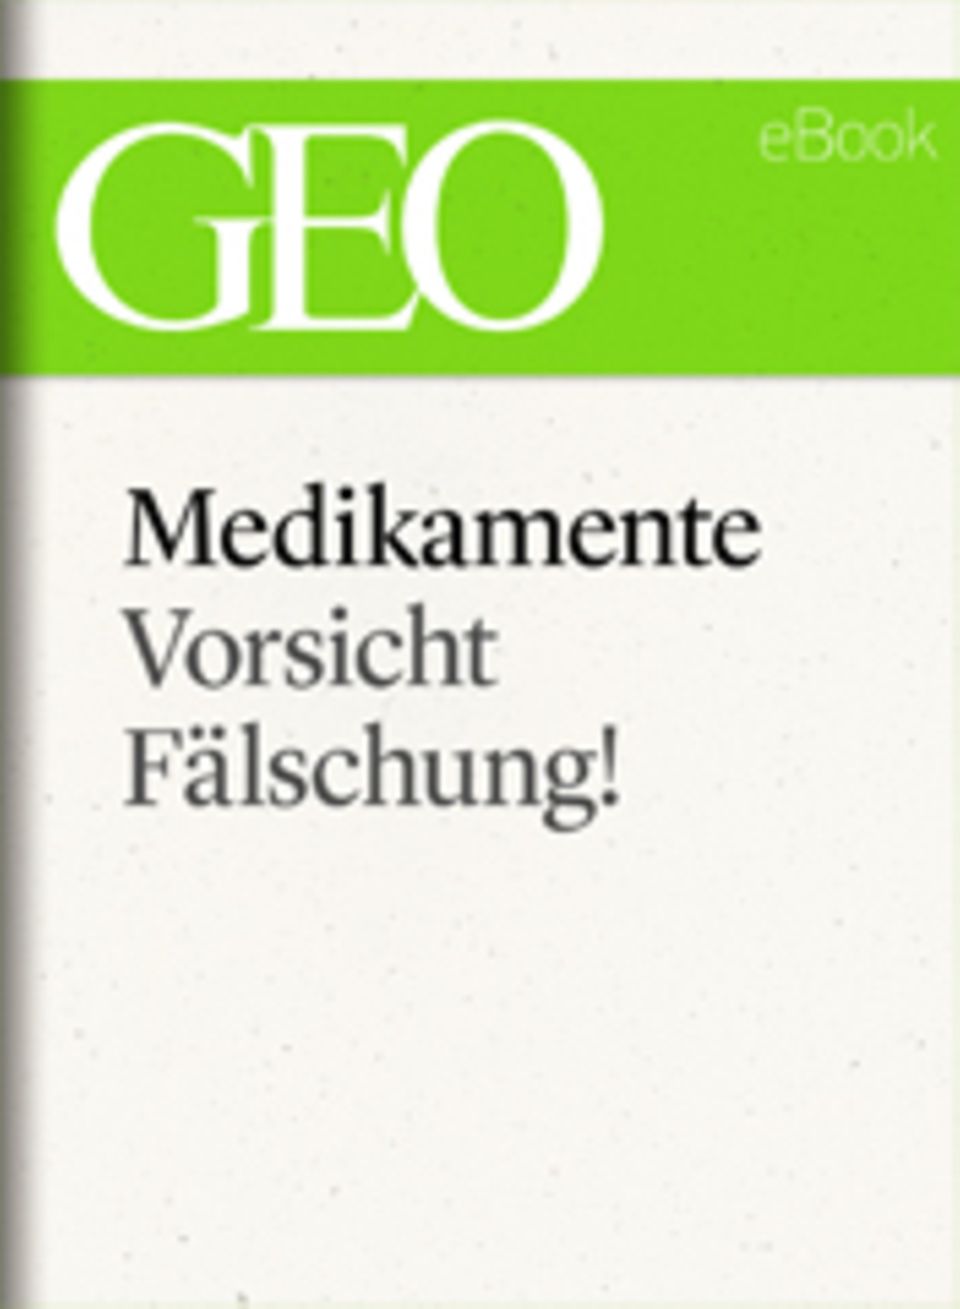 Vorsicht, Fälschung!: GEO eBook "Medikamente"